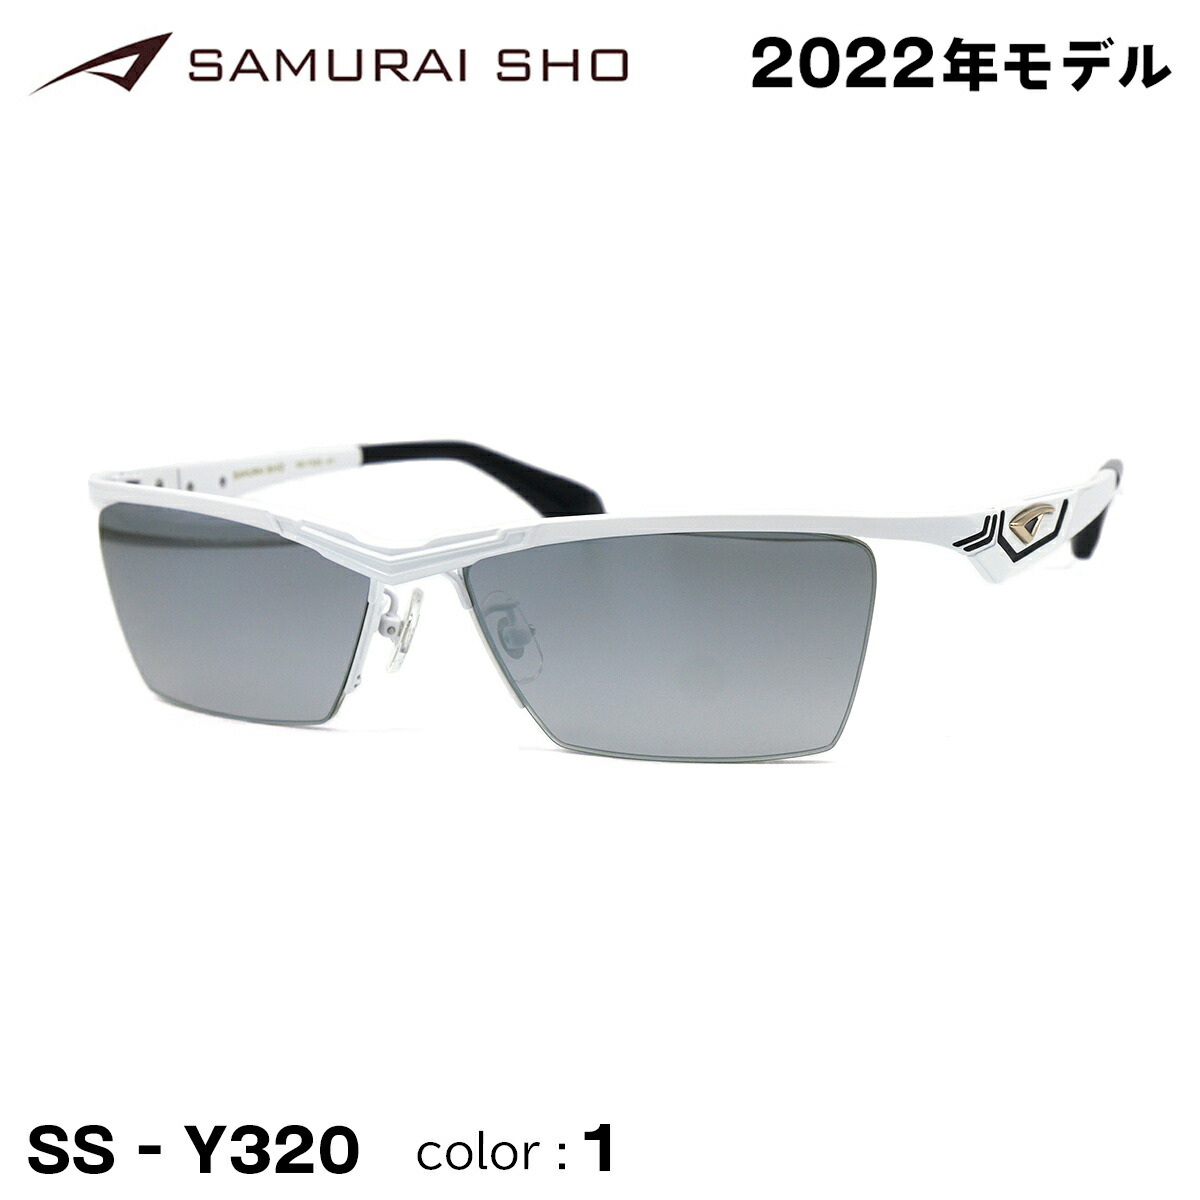 2022 最新モデル サムライ翔 サングラス SS-Y320 #1 哀川翔